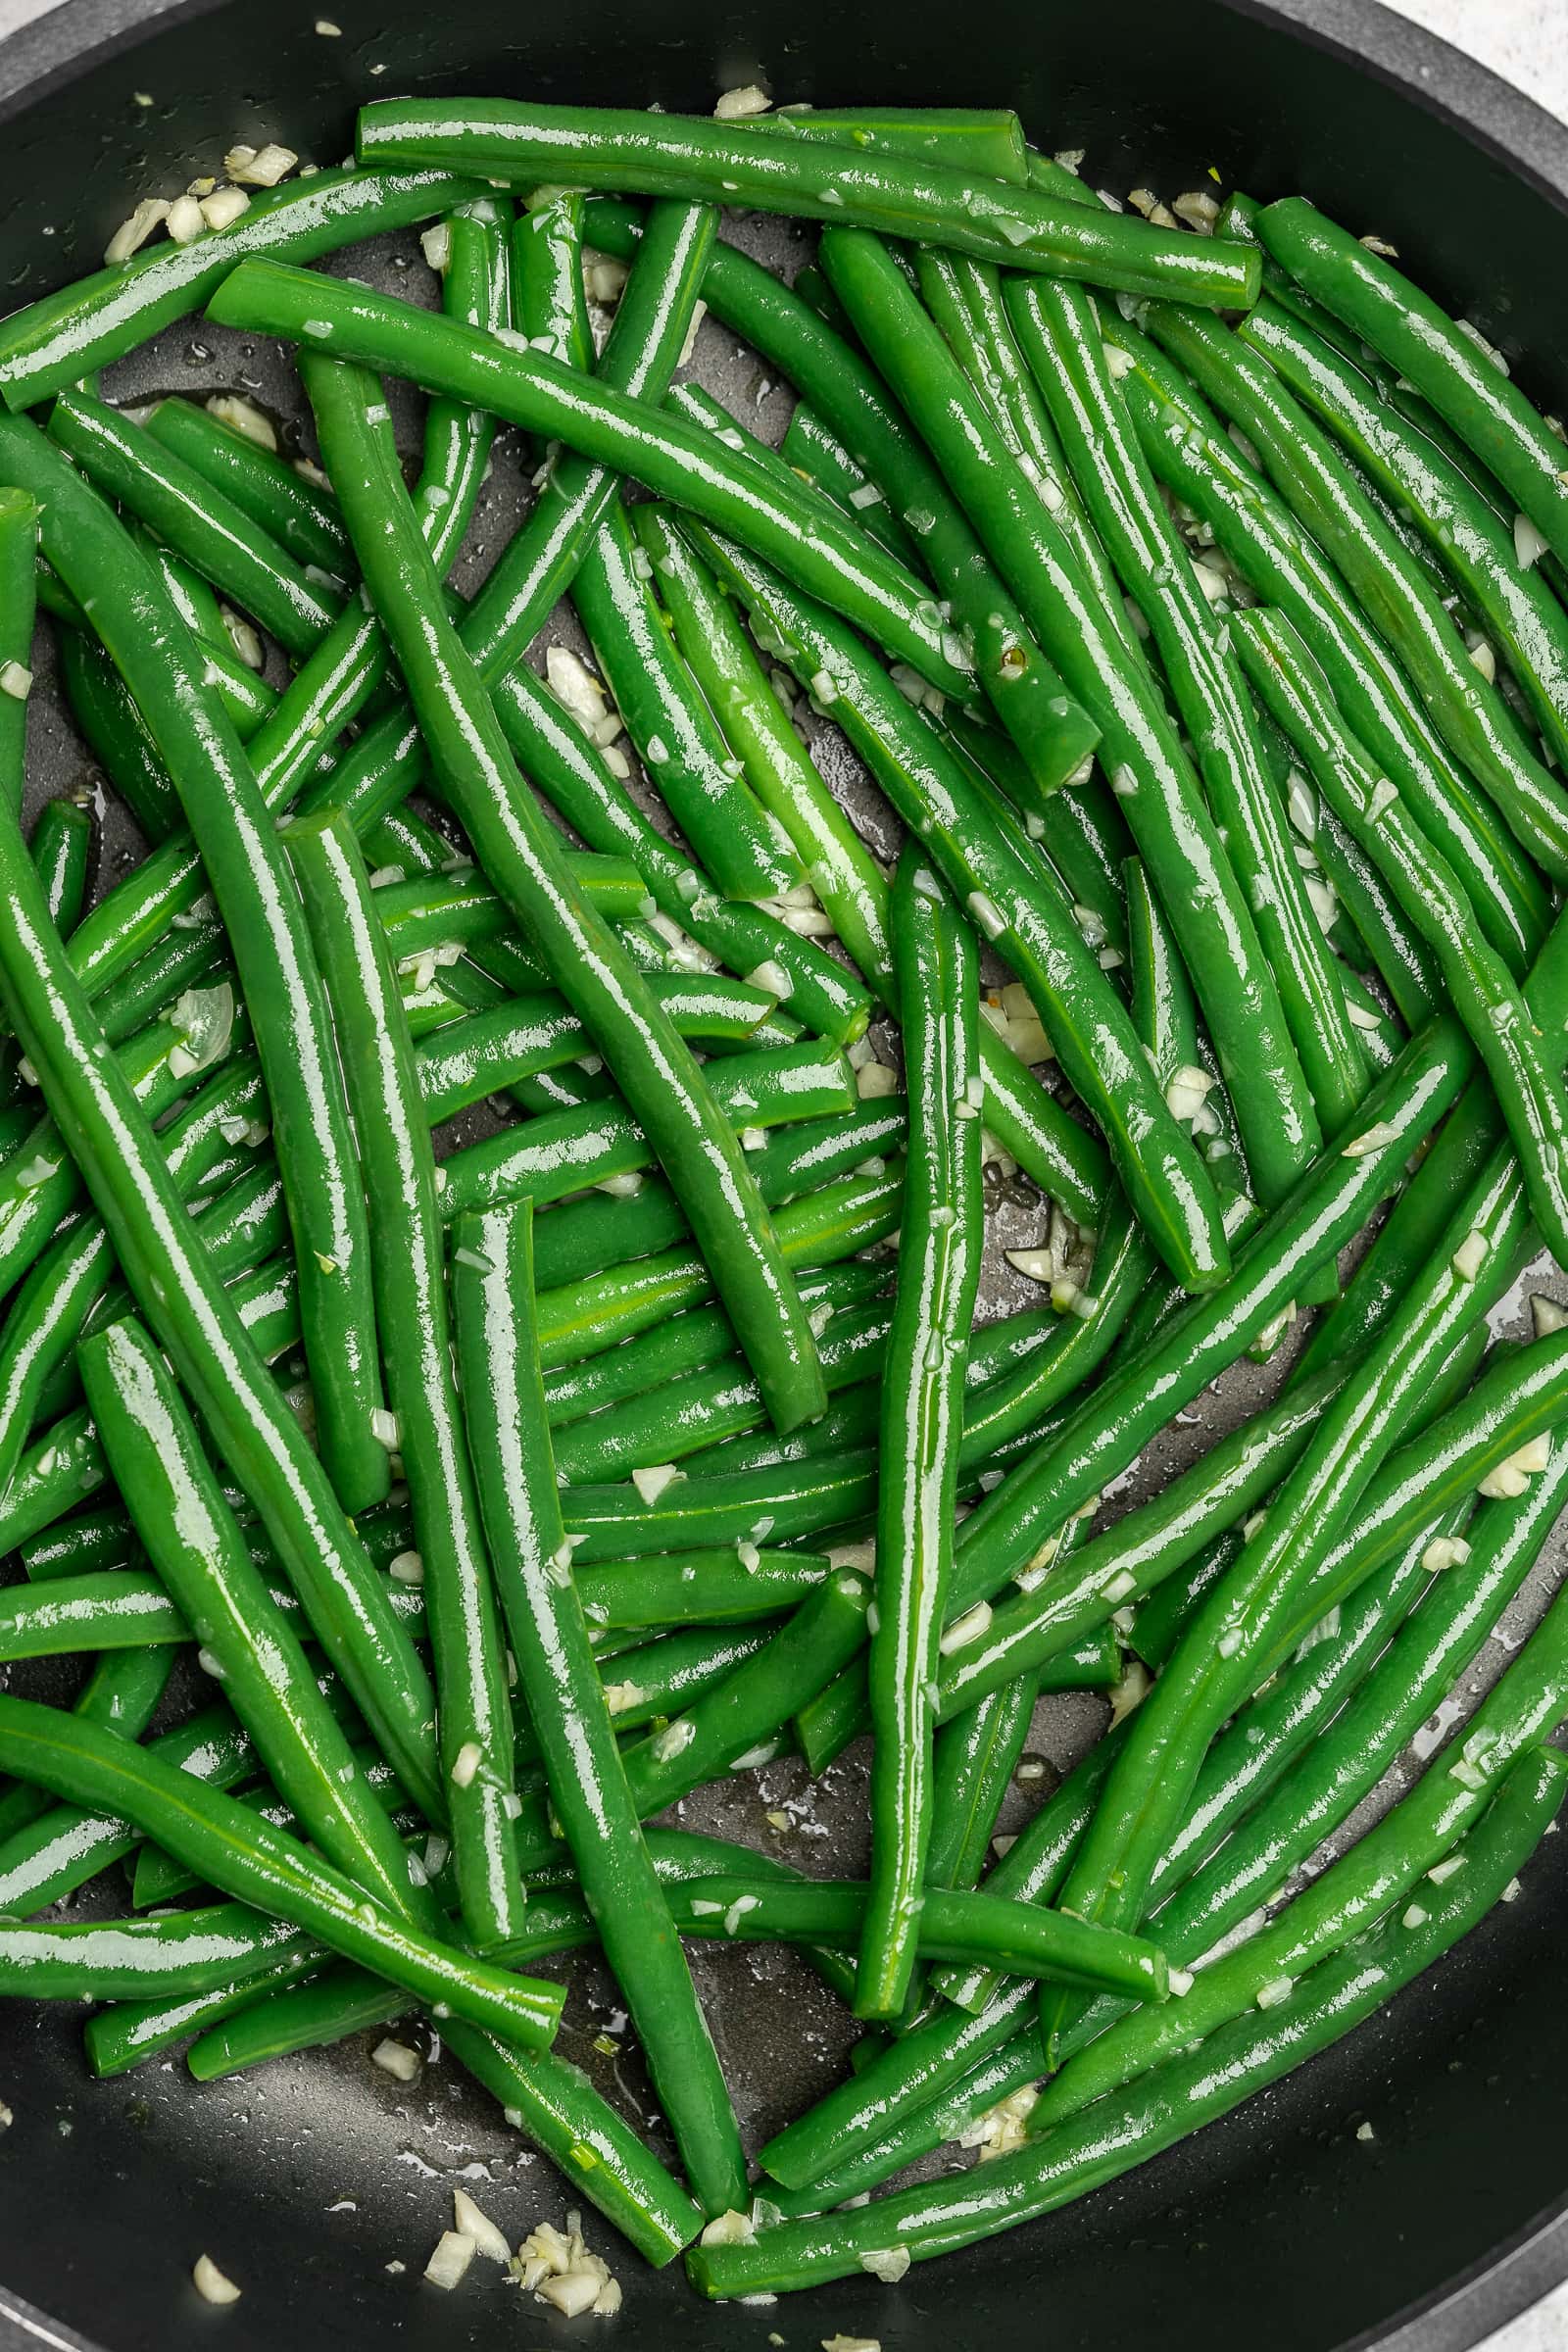 Garlic green beans in a frying pan.